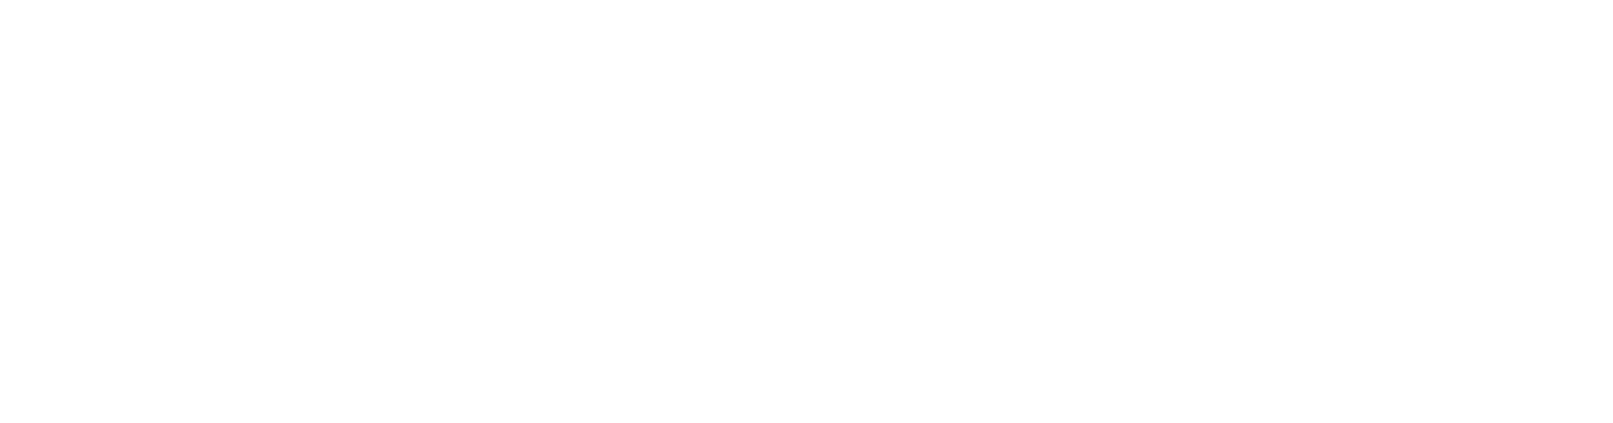 MyJobSy - Govt Job Information